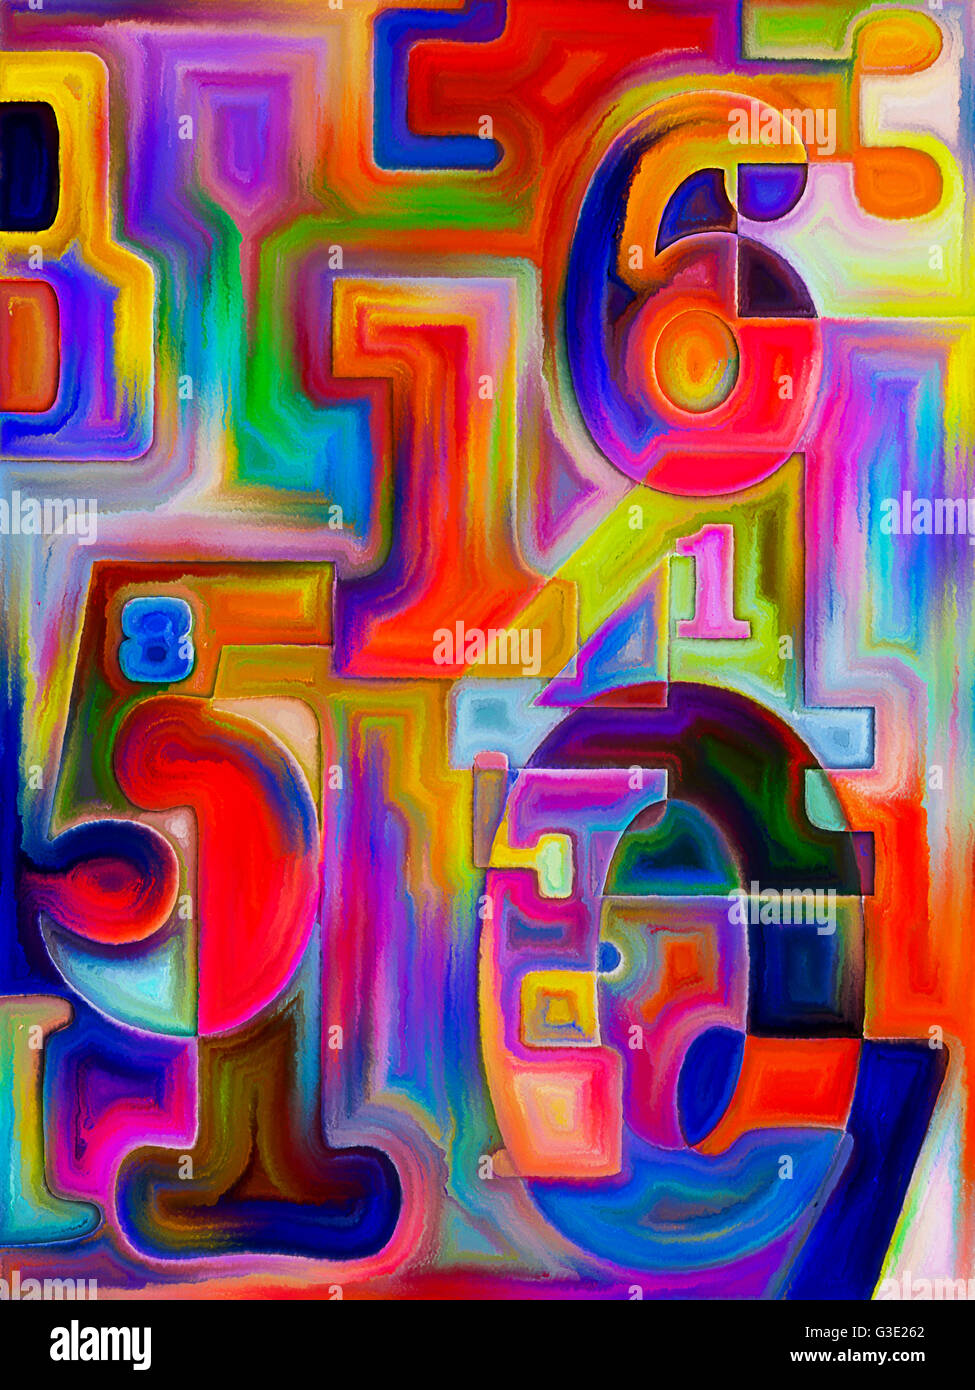 Série Peinture décimal. Composition de chiffres décimaux peint approprié comme une toile de fond pour les projets sur les mathématiques, de la science et de l'educati Banque D'Images